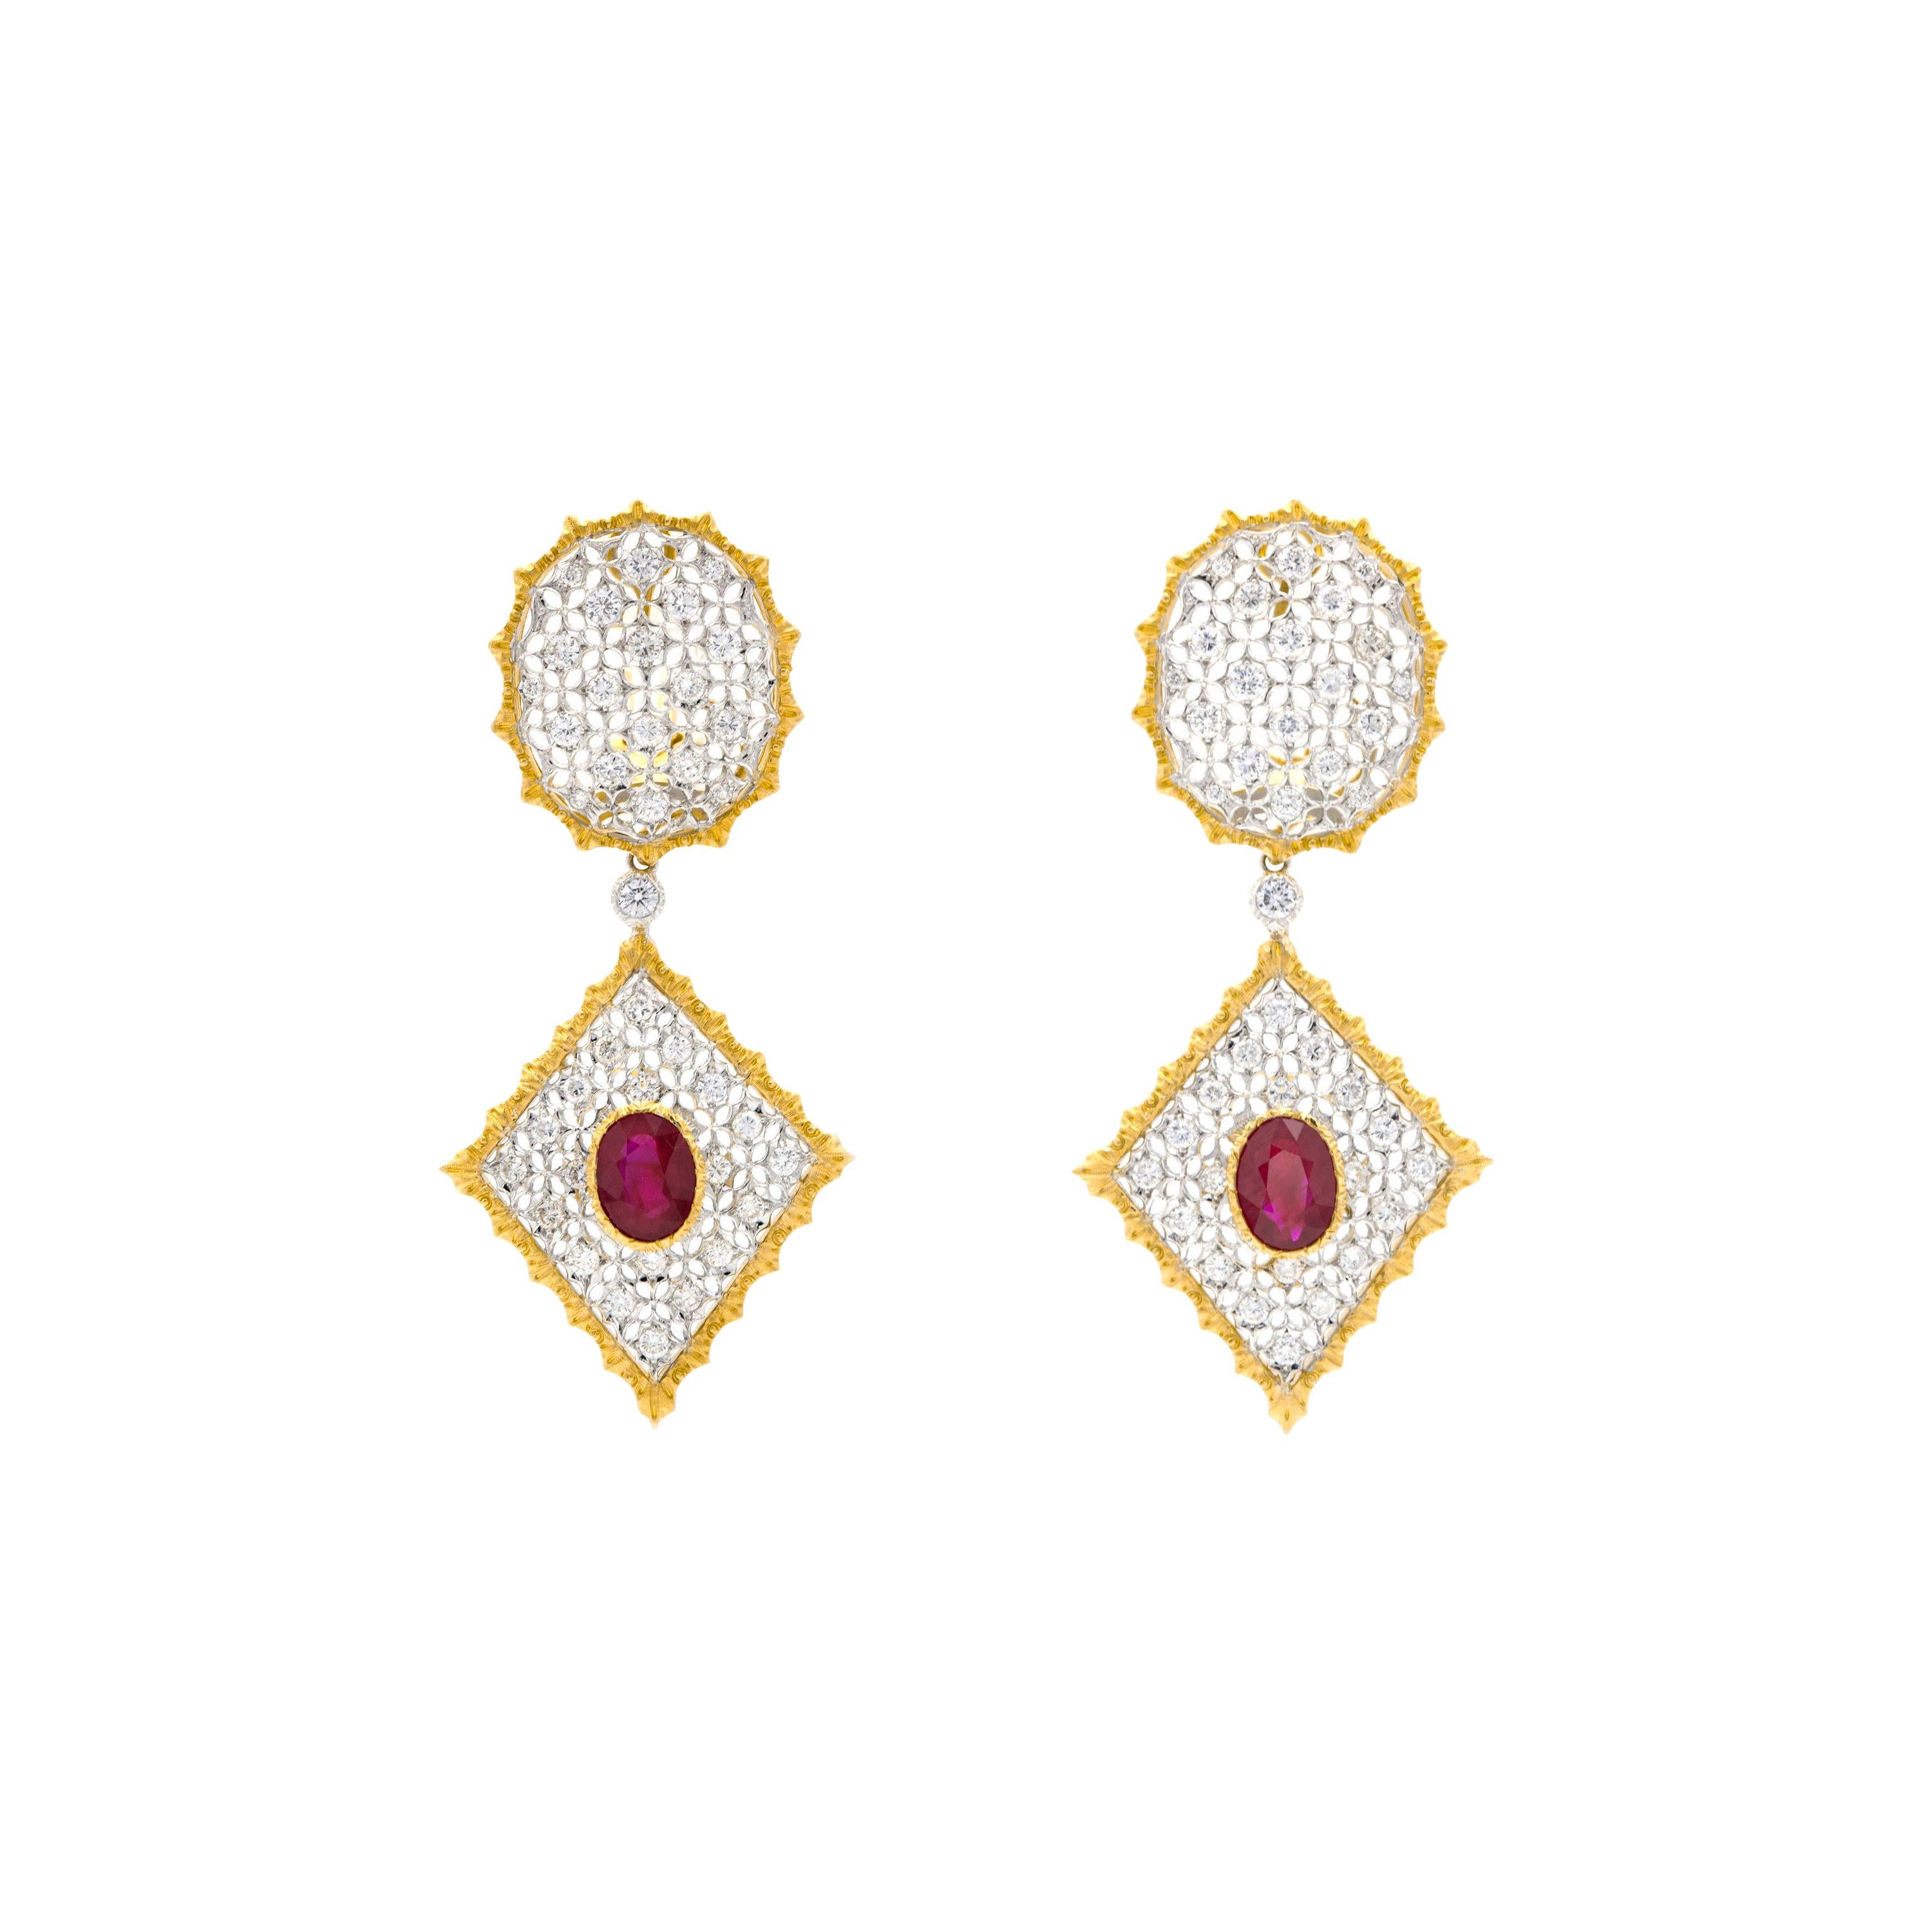 Buccellati Dangle Rombi Earrings with Rubies and Diamonds